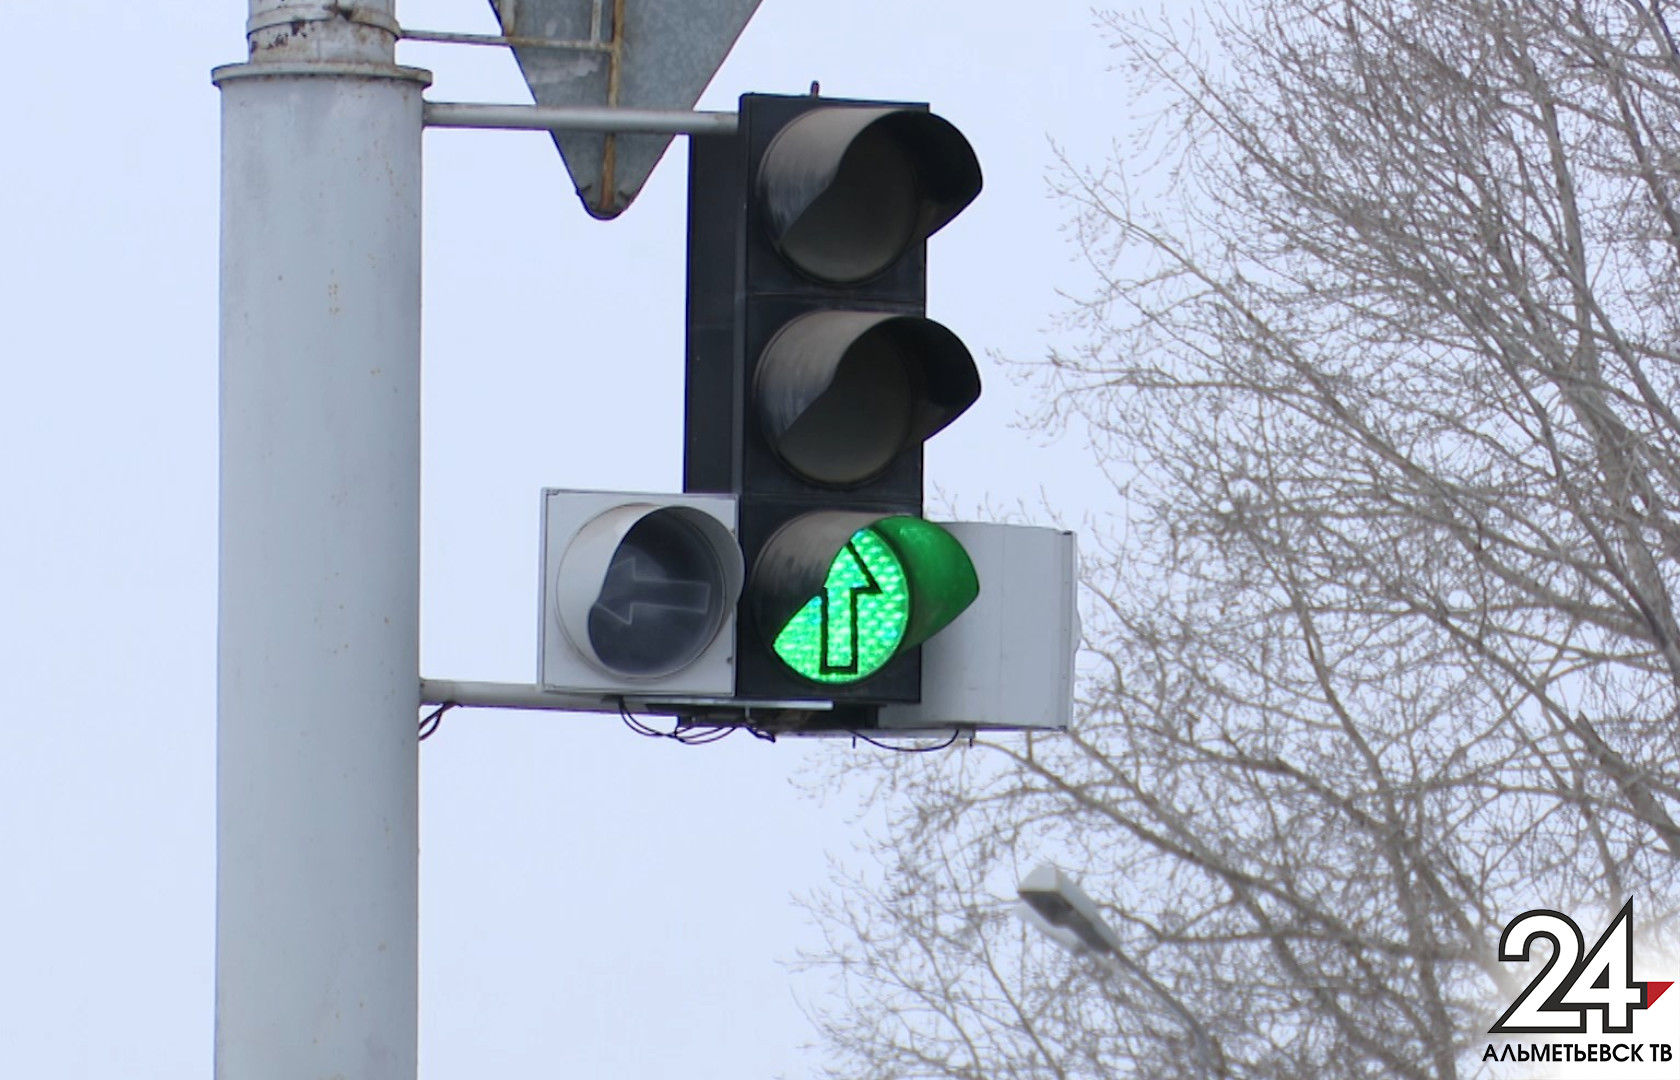 В Альметьевске увеличили длительность зеленого сигнала светофора на улице Шевченко